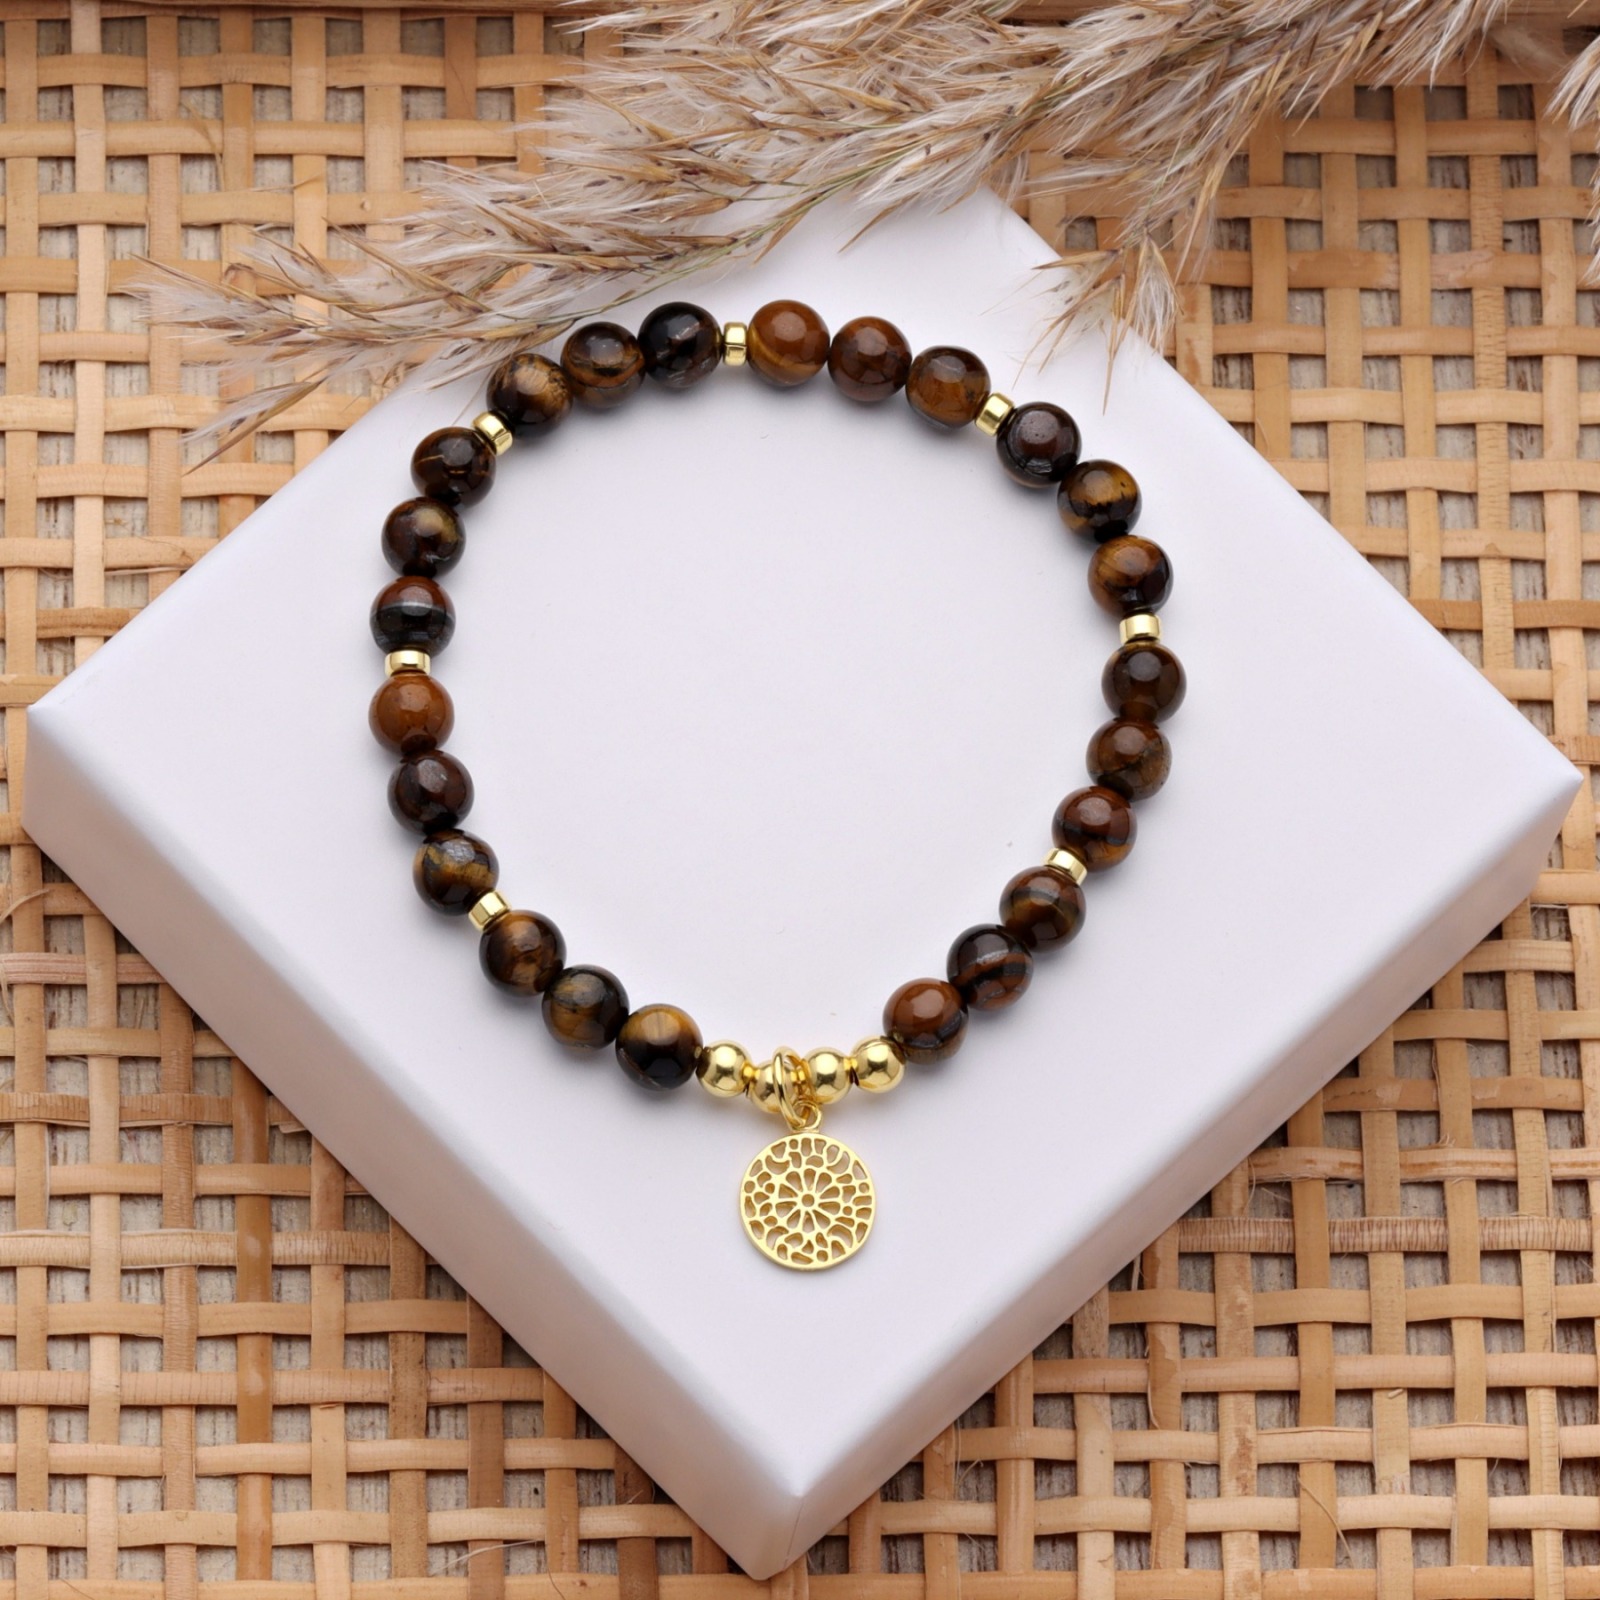 Armband Tigerauge mit Mandala 725er Silber oder vergoldet perfektes Geschenk für Frauen 5